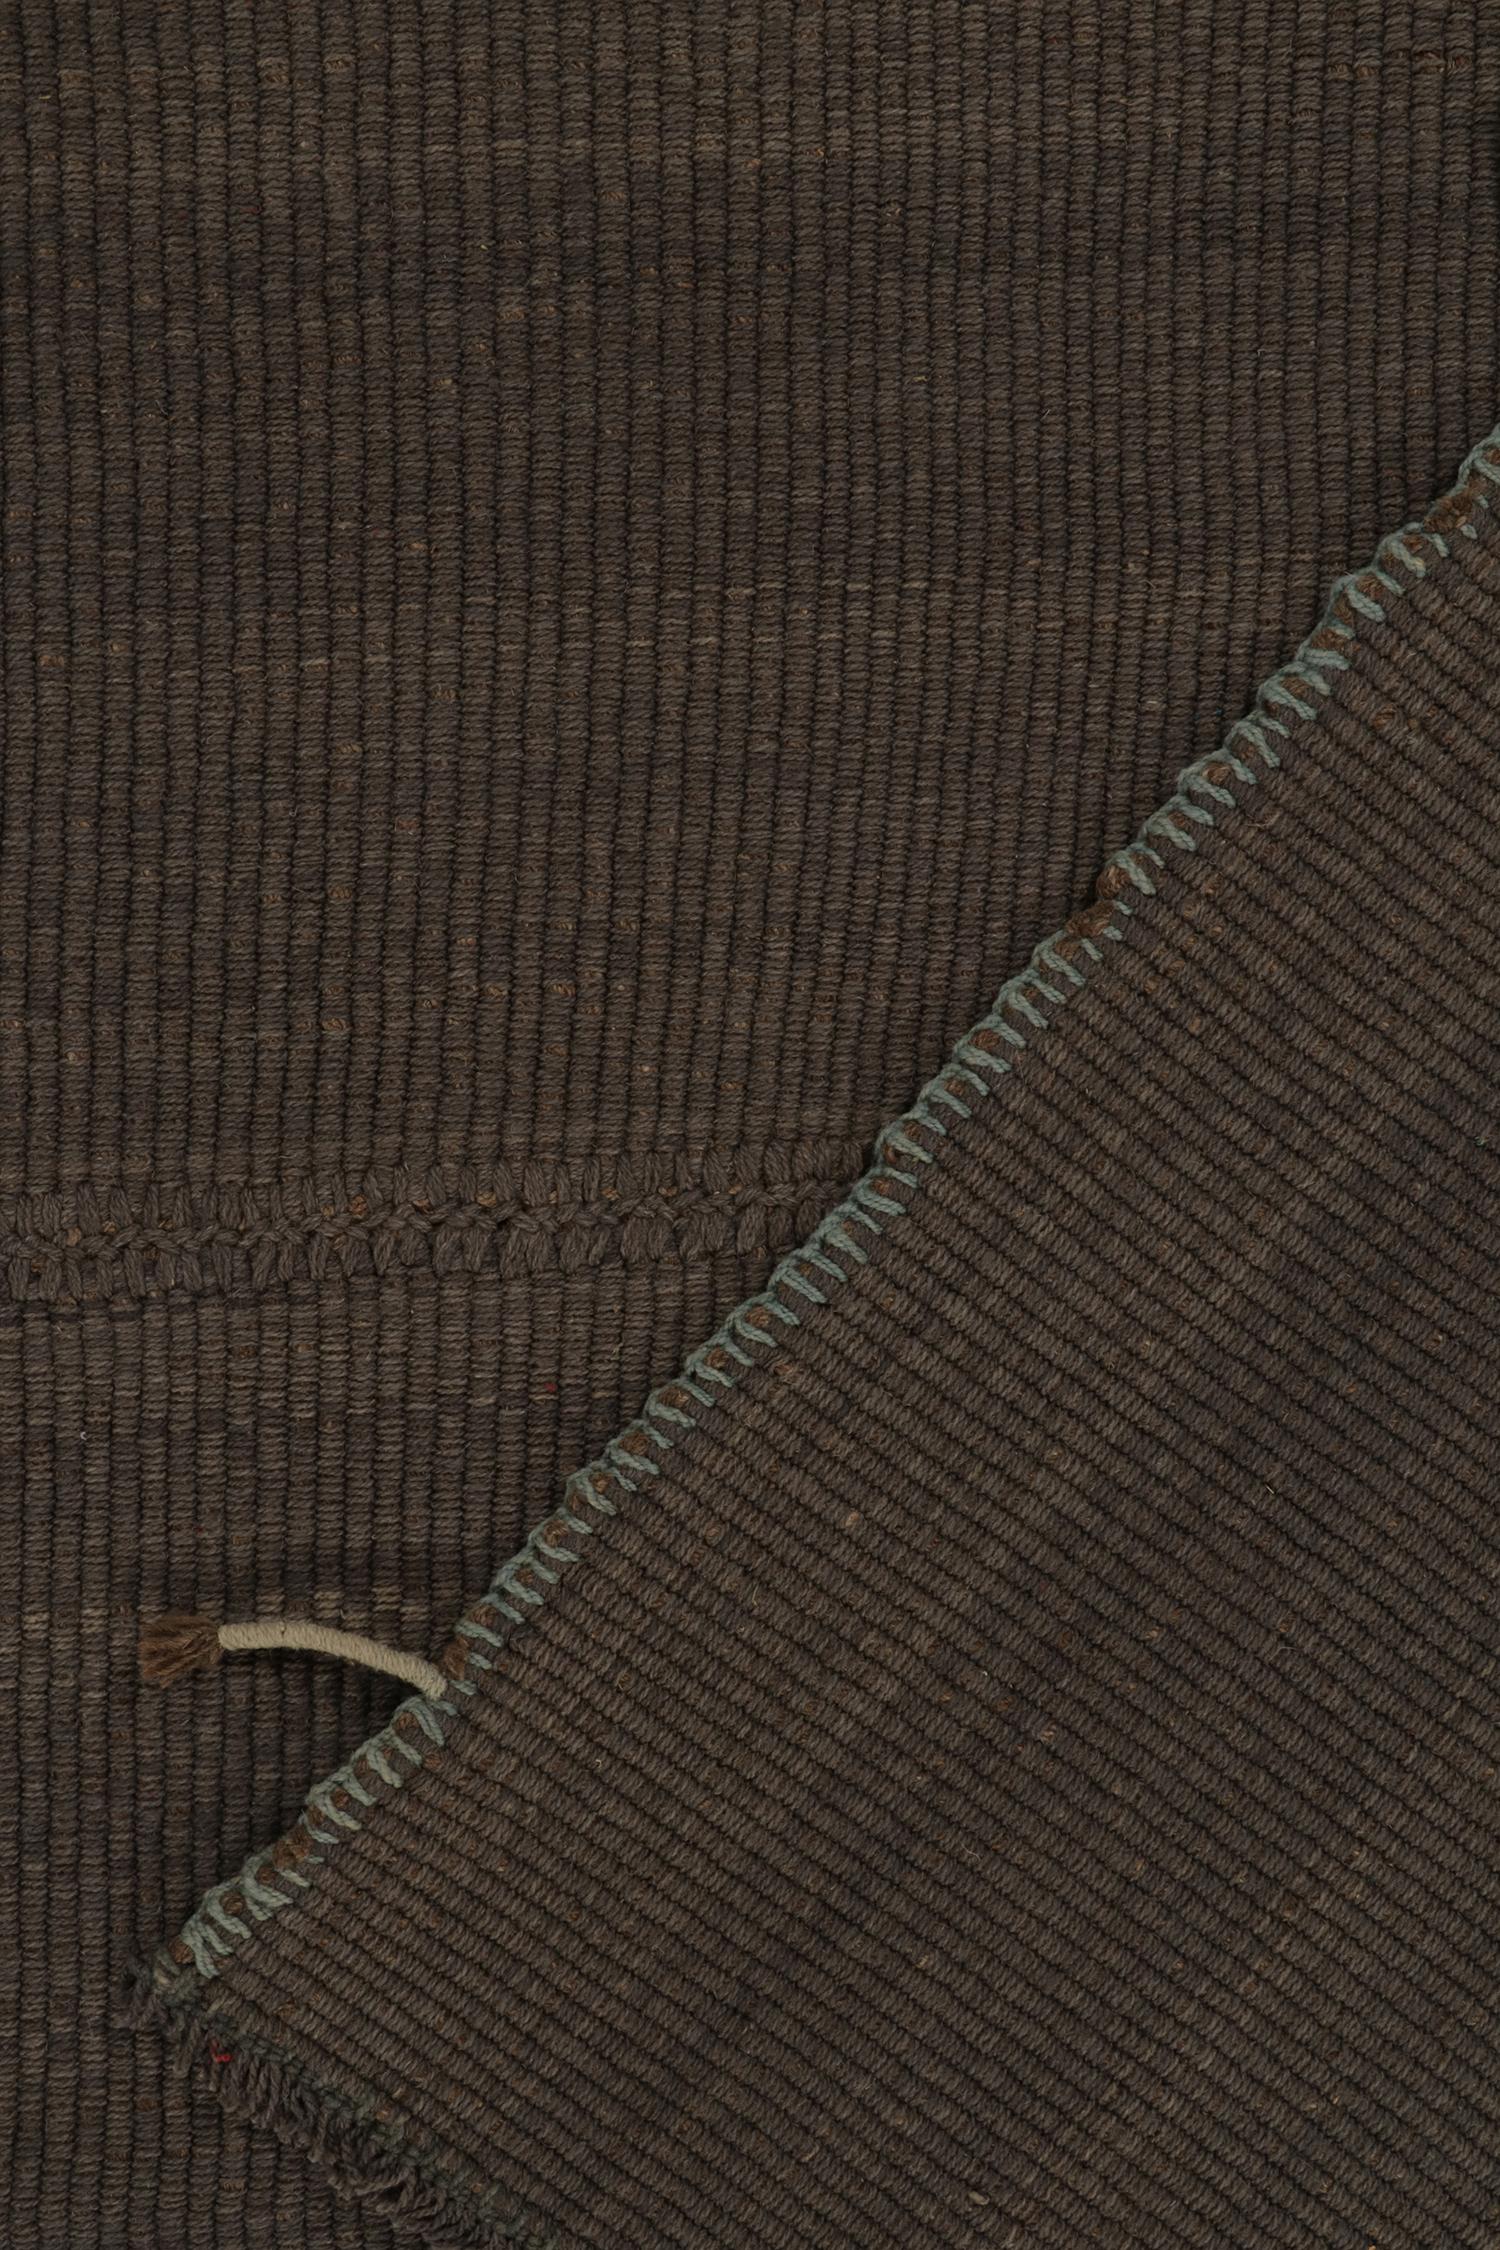 Rug & Kilim's Contemporary Oversized Kilim in Brown Muted Stripes, Blue Accents (21. Jahrhundert und zeitgenössisch) im Angebot